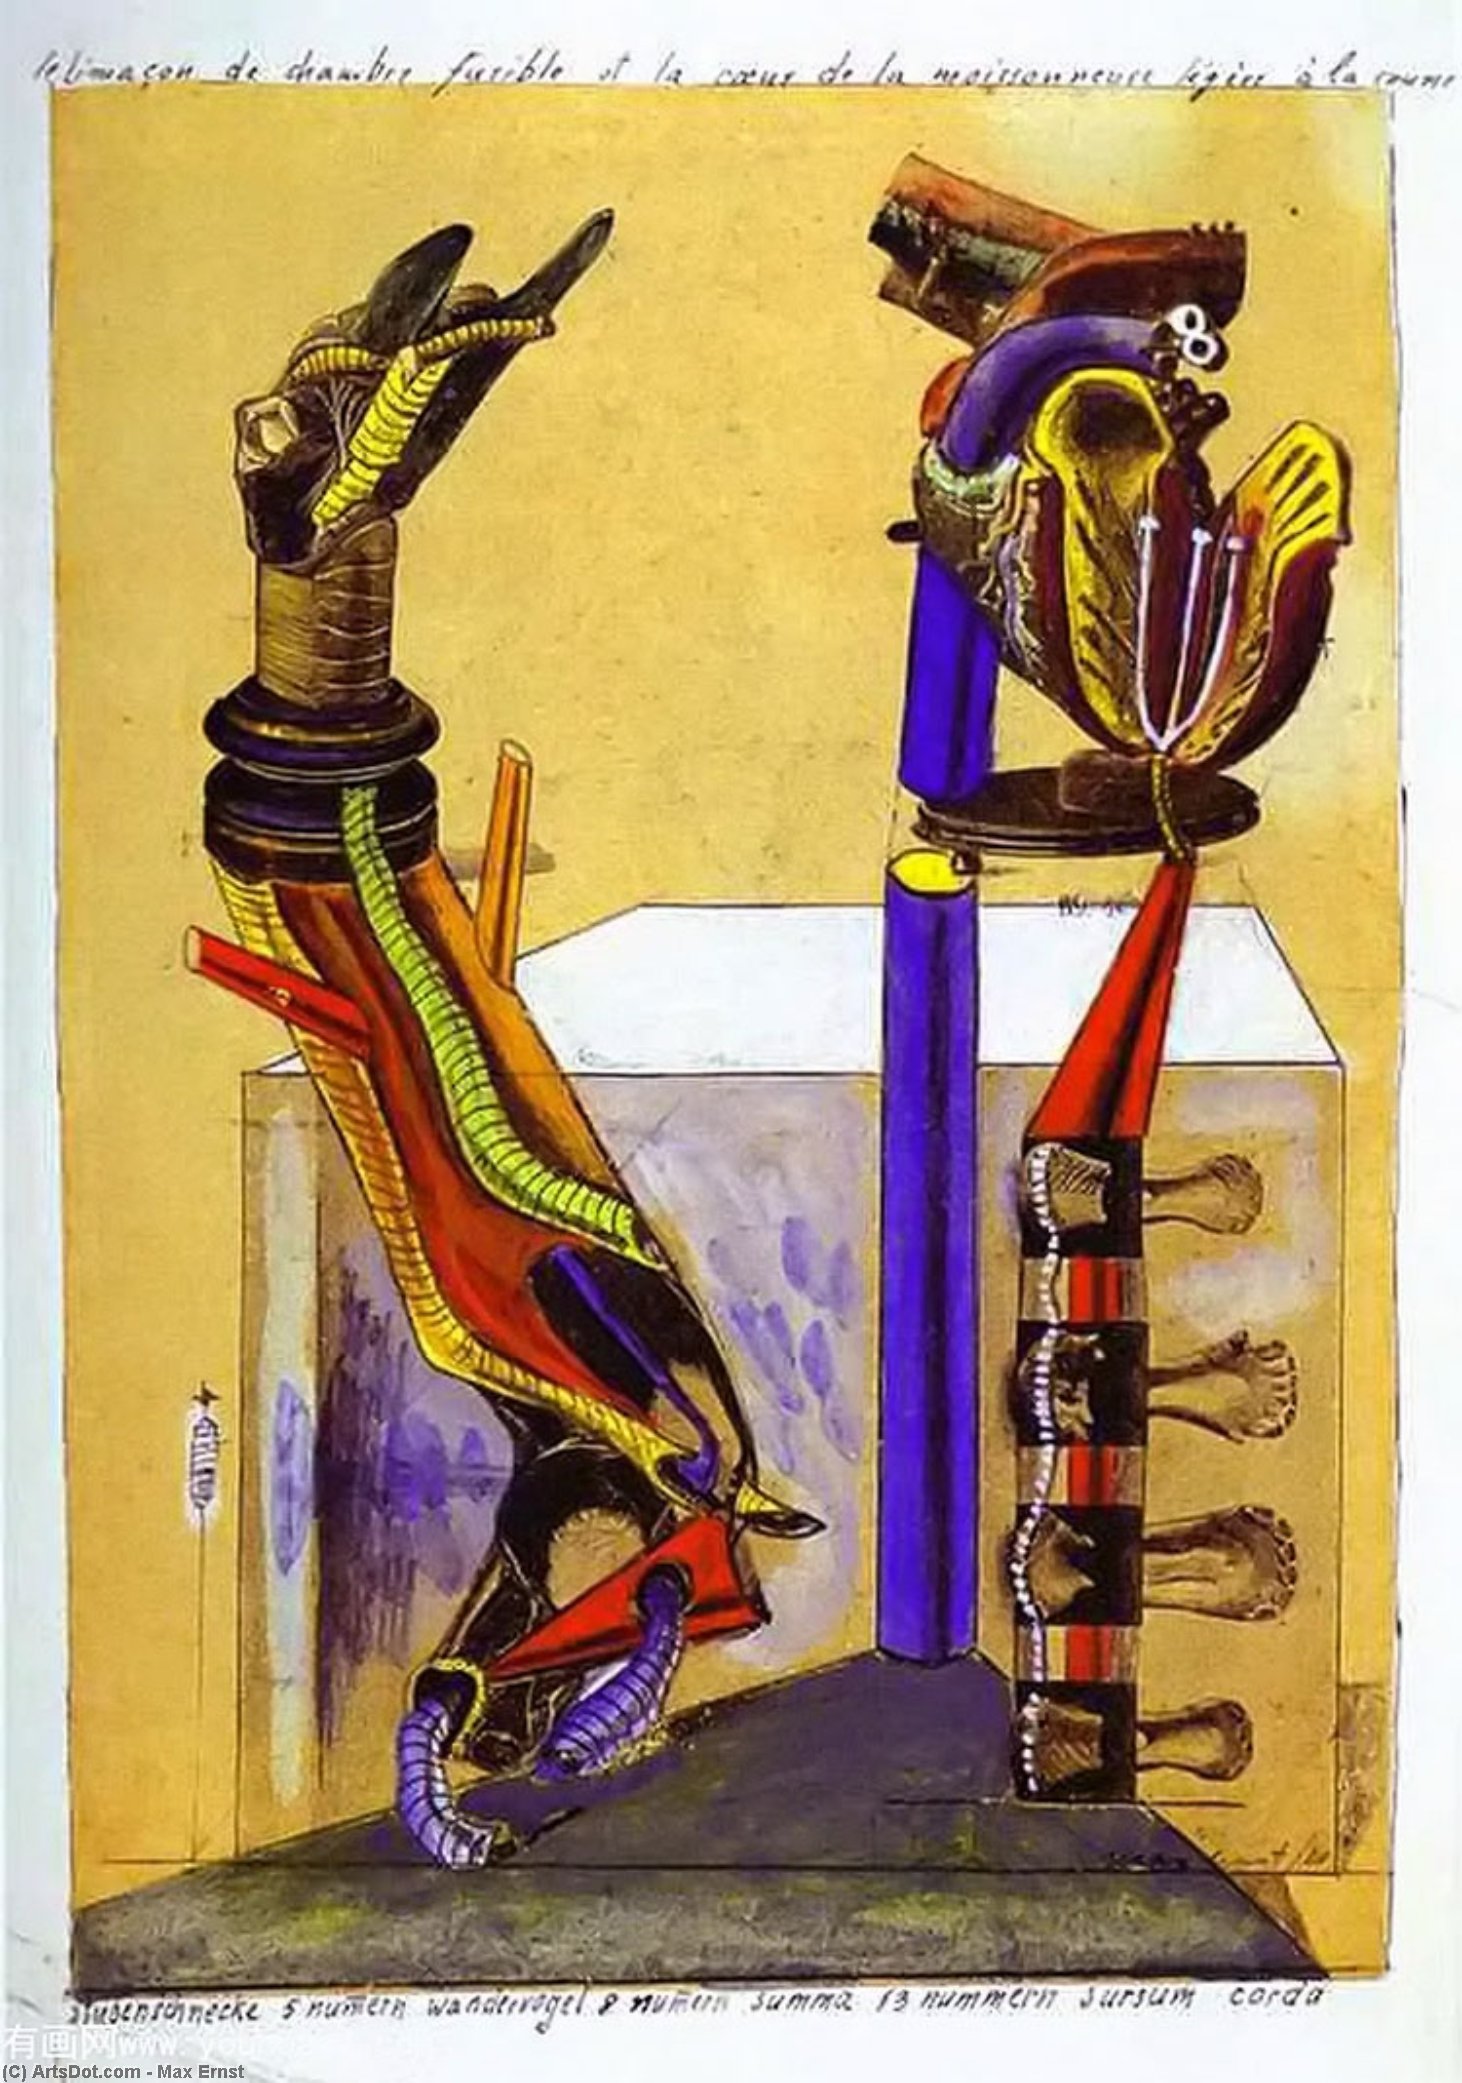 WikiOO.org - Encyclopedia of Fine Arts - Maľba, Artwork Max Ernst - The slug room